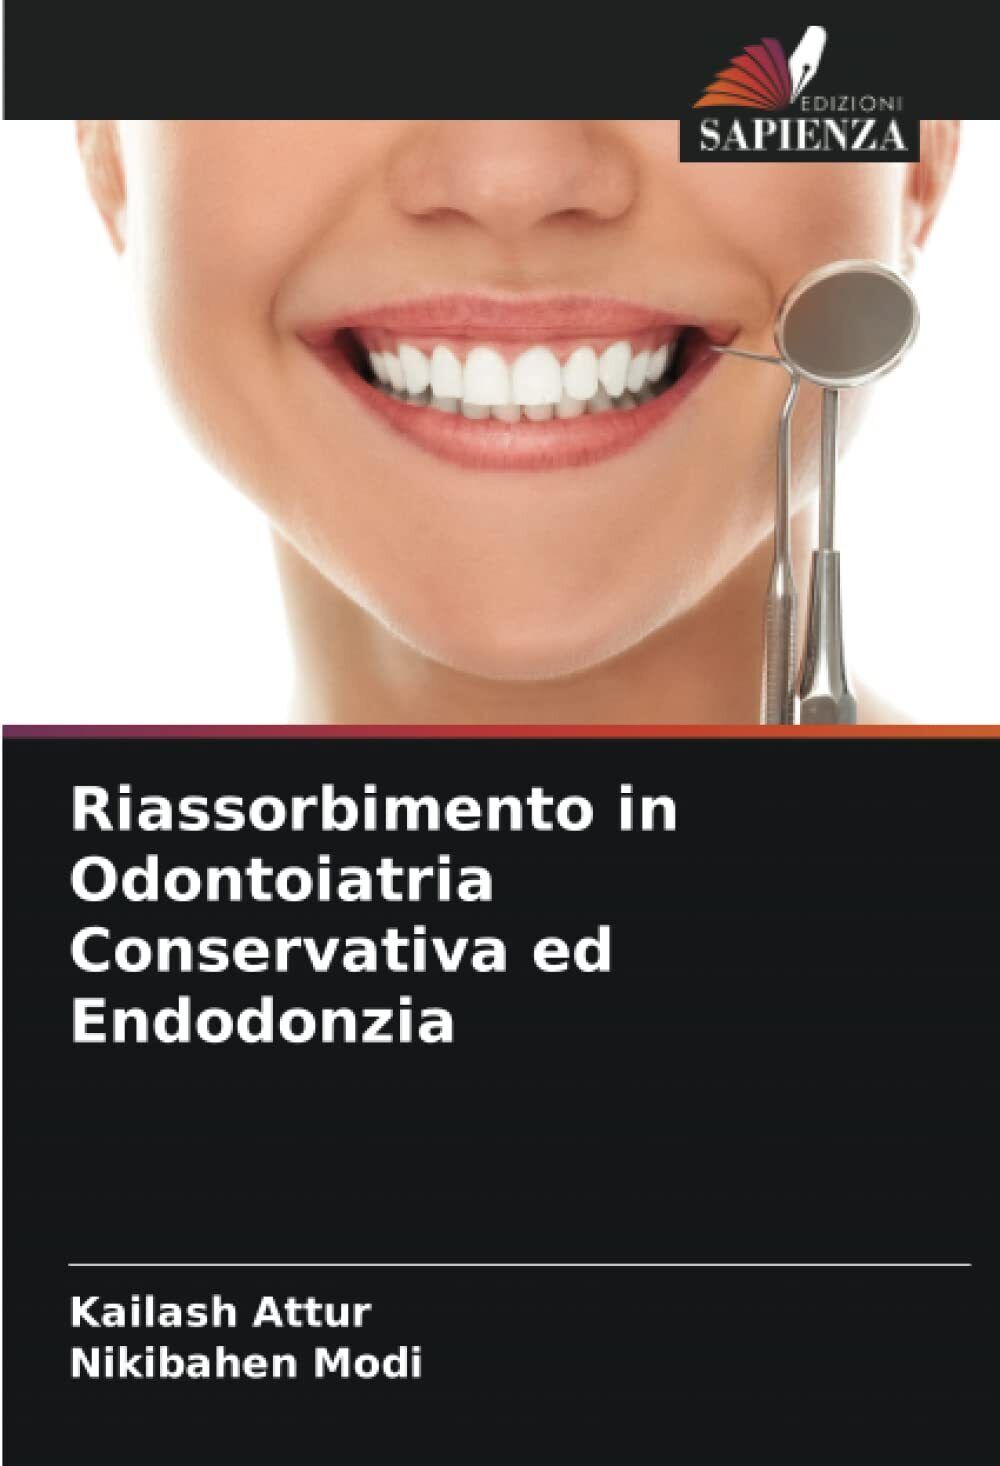 Riassorbimento in Odontoiatria Conservativa ed Endodonzia - Sapienza, 2022